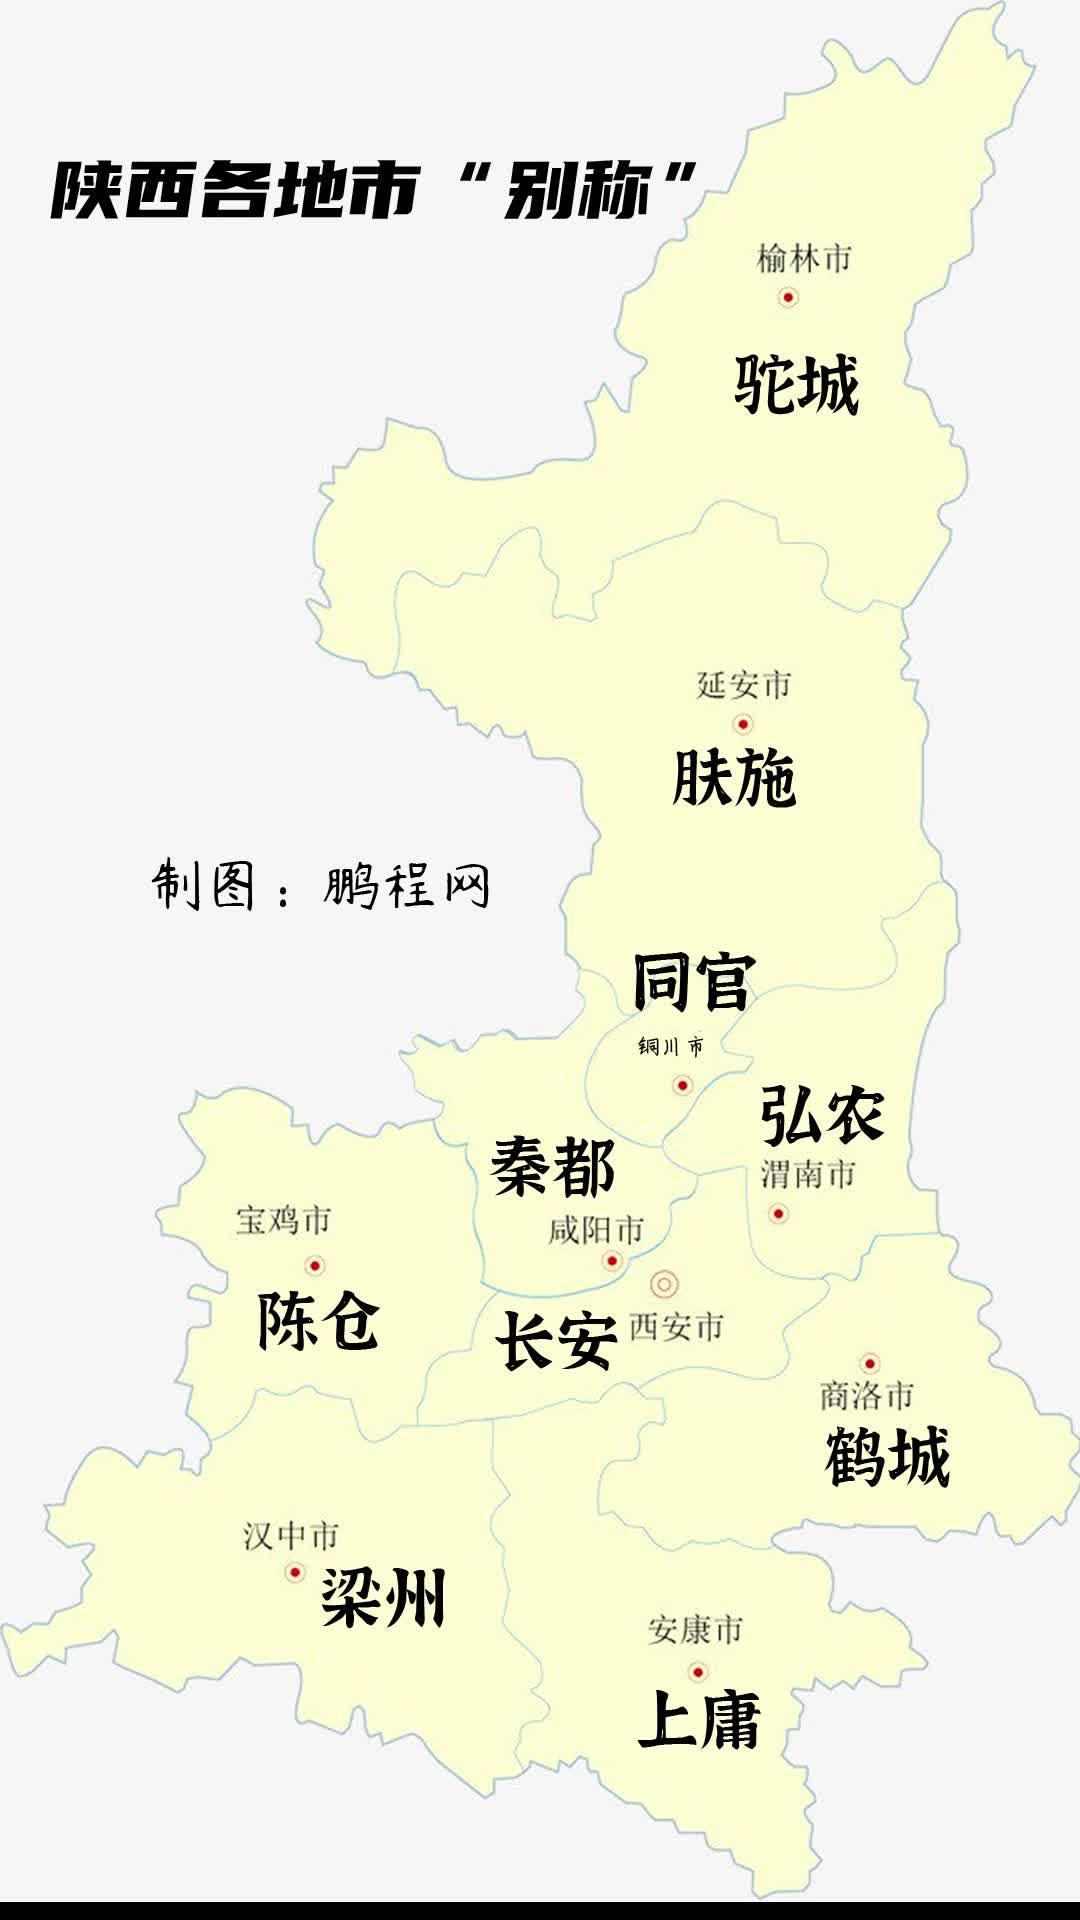 陕西省榆林市榆溪河被称为榆林城区的"母亲河"变排污河?